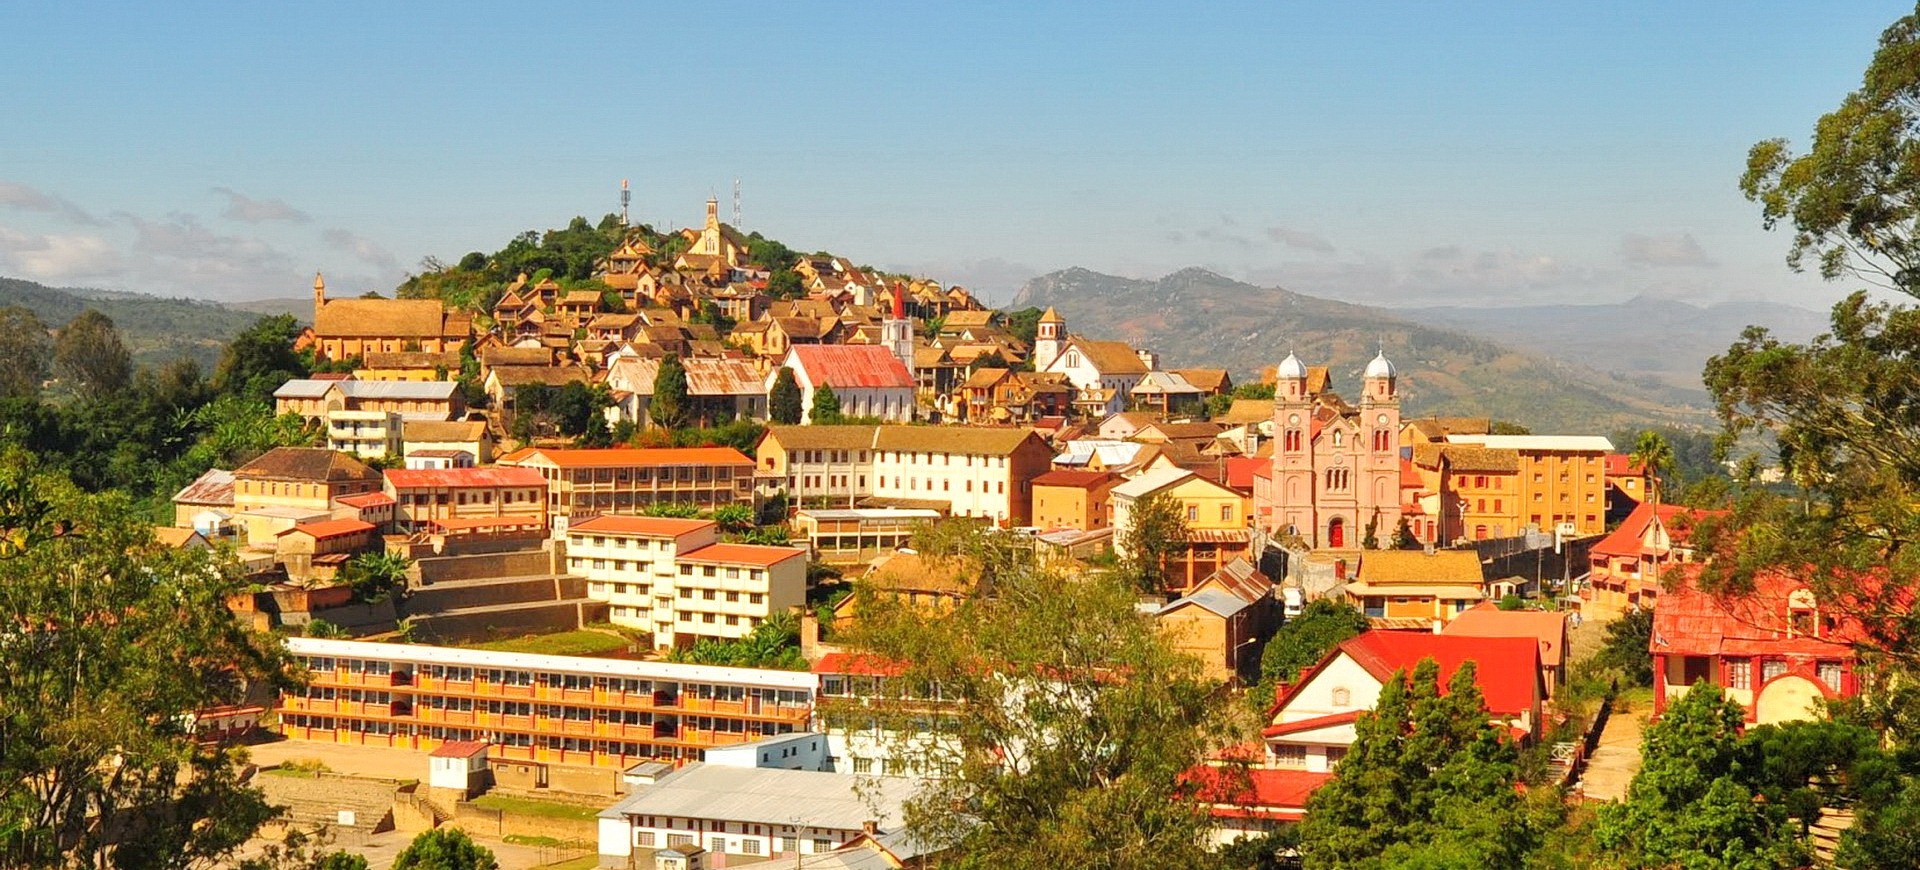 Vue panoramique sur la ville de Fianarantosa